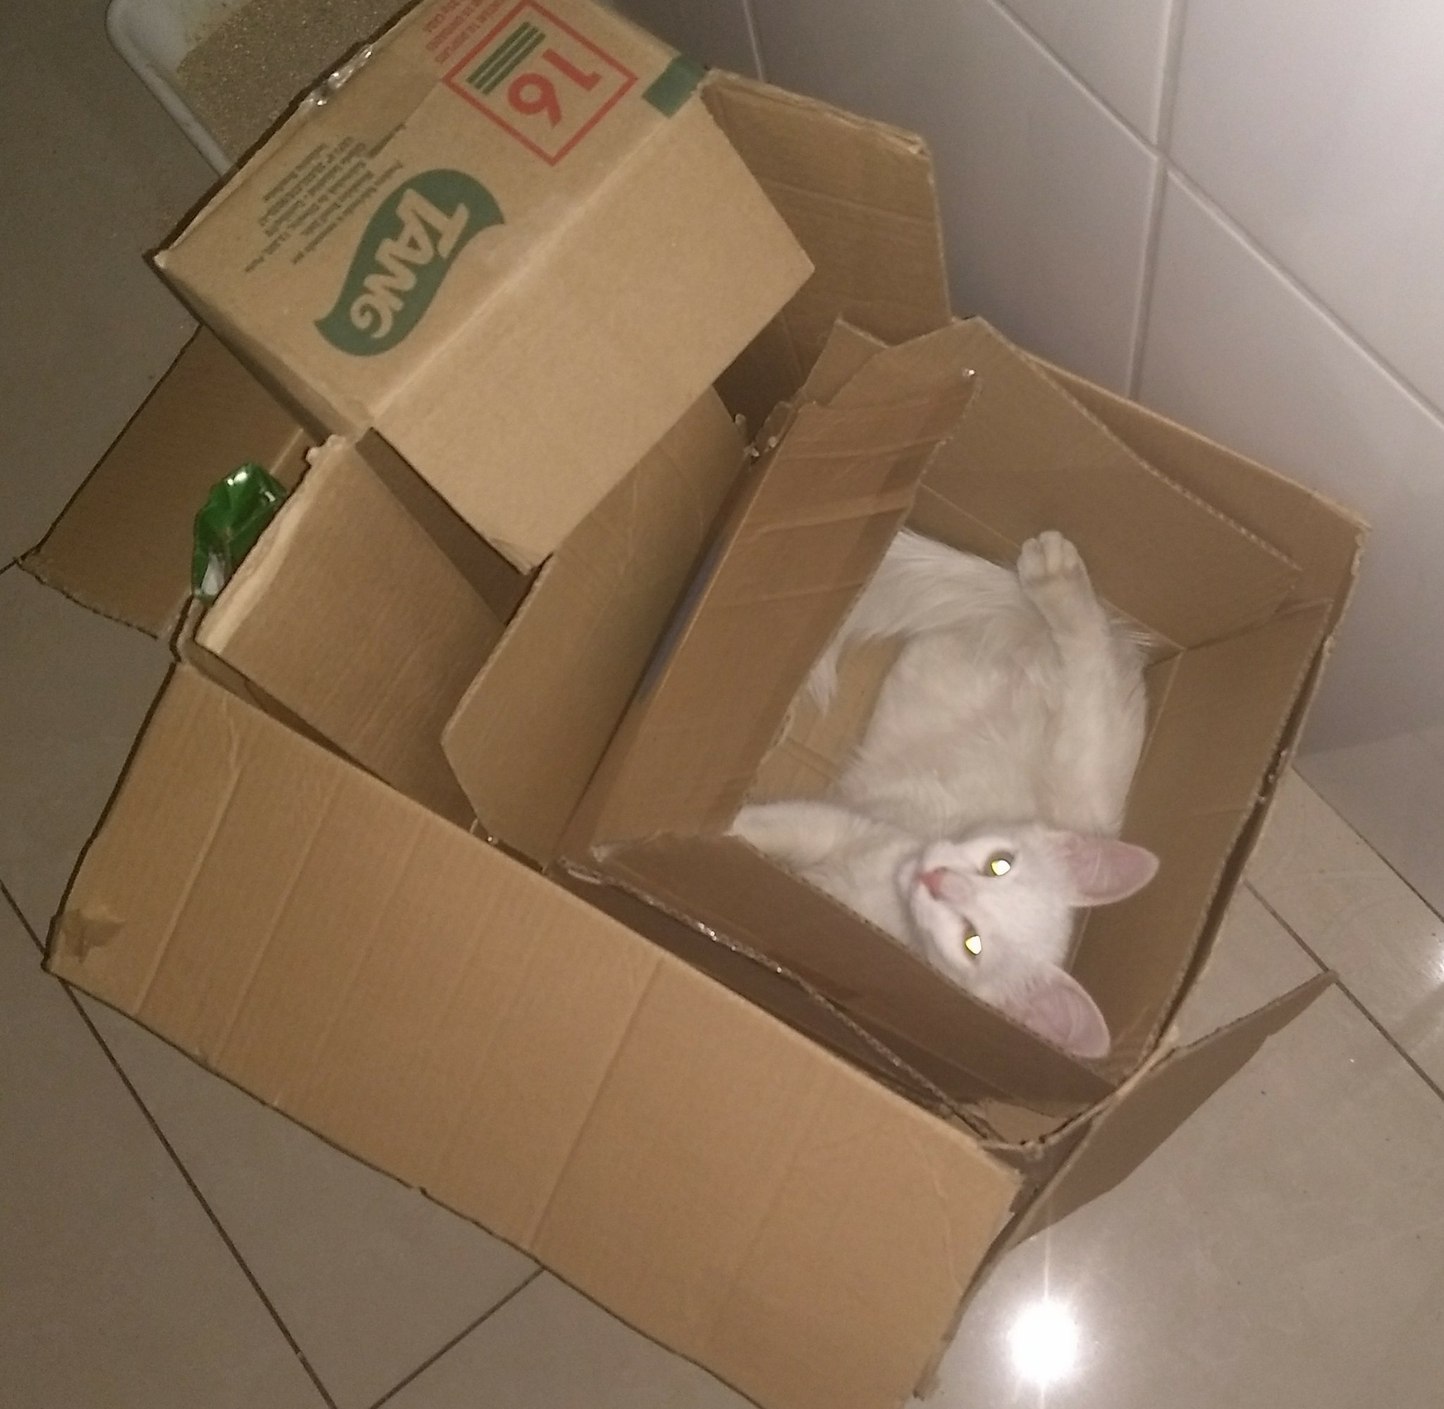 Seu gato curte caixas? - meme